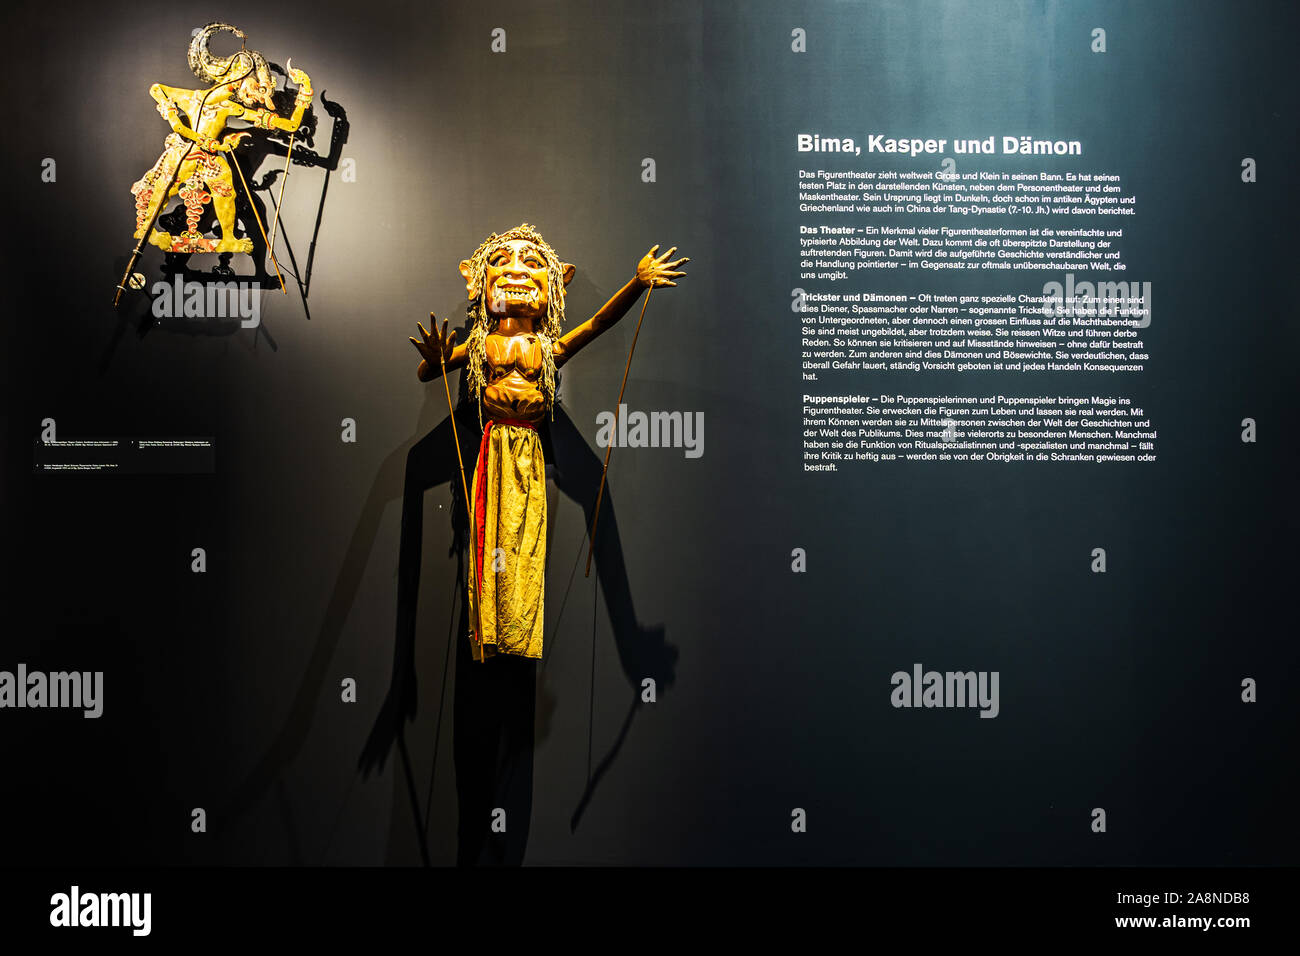 Asta marionetta che rappresenta il demone Setang Doblang Semarang, West Java, Indonesia e Bhima, gioco di ombre figura, Museo delle Culture exhibition, Basilea, S Foto Stock